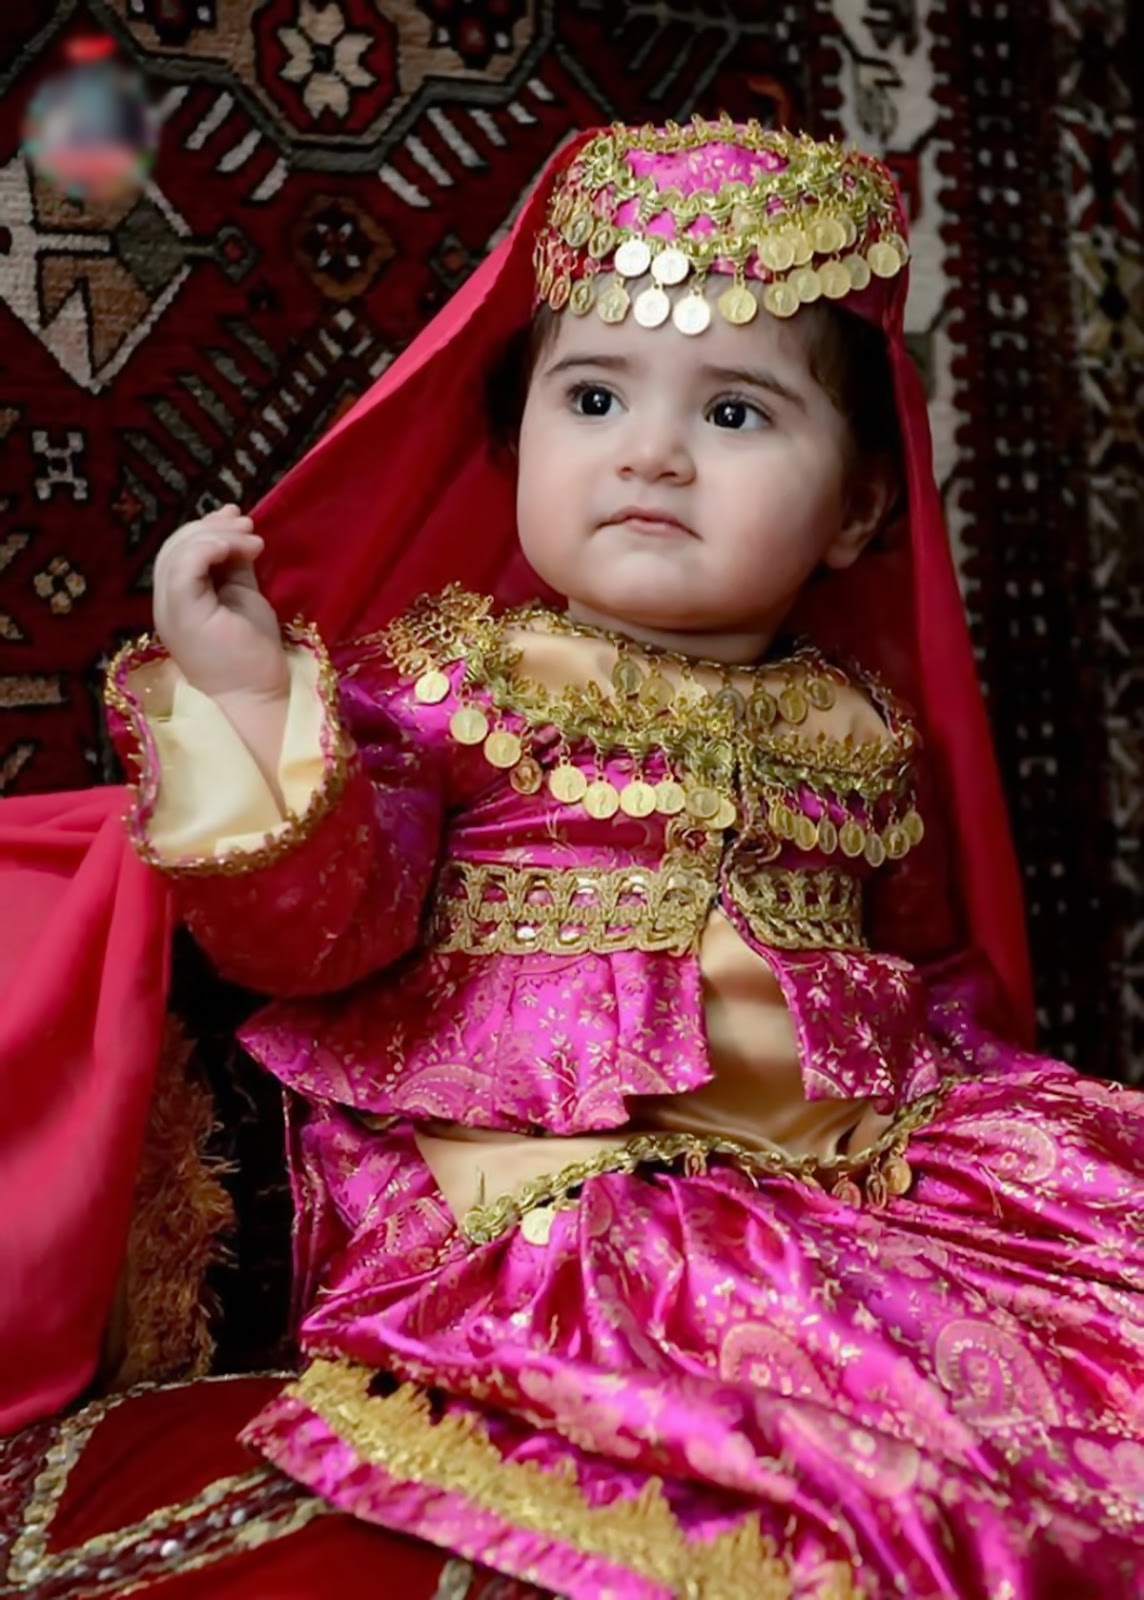 Имя азер. Детский азербайджанский костюм. Турецкий национальный костюм для девочки. Азербайджанские дети. Азербайджанский национальный костюм для девочки.